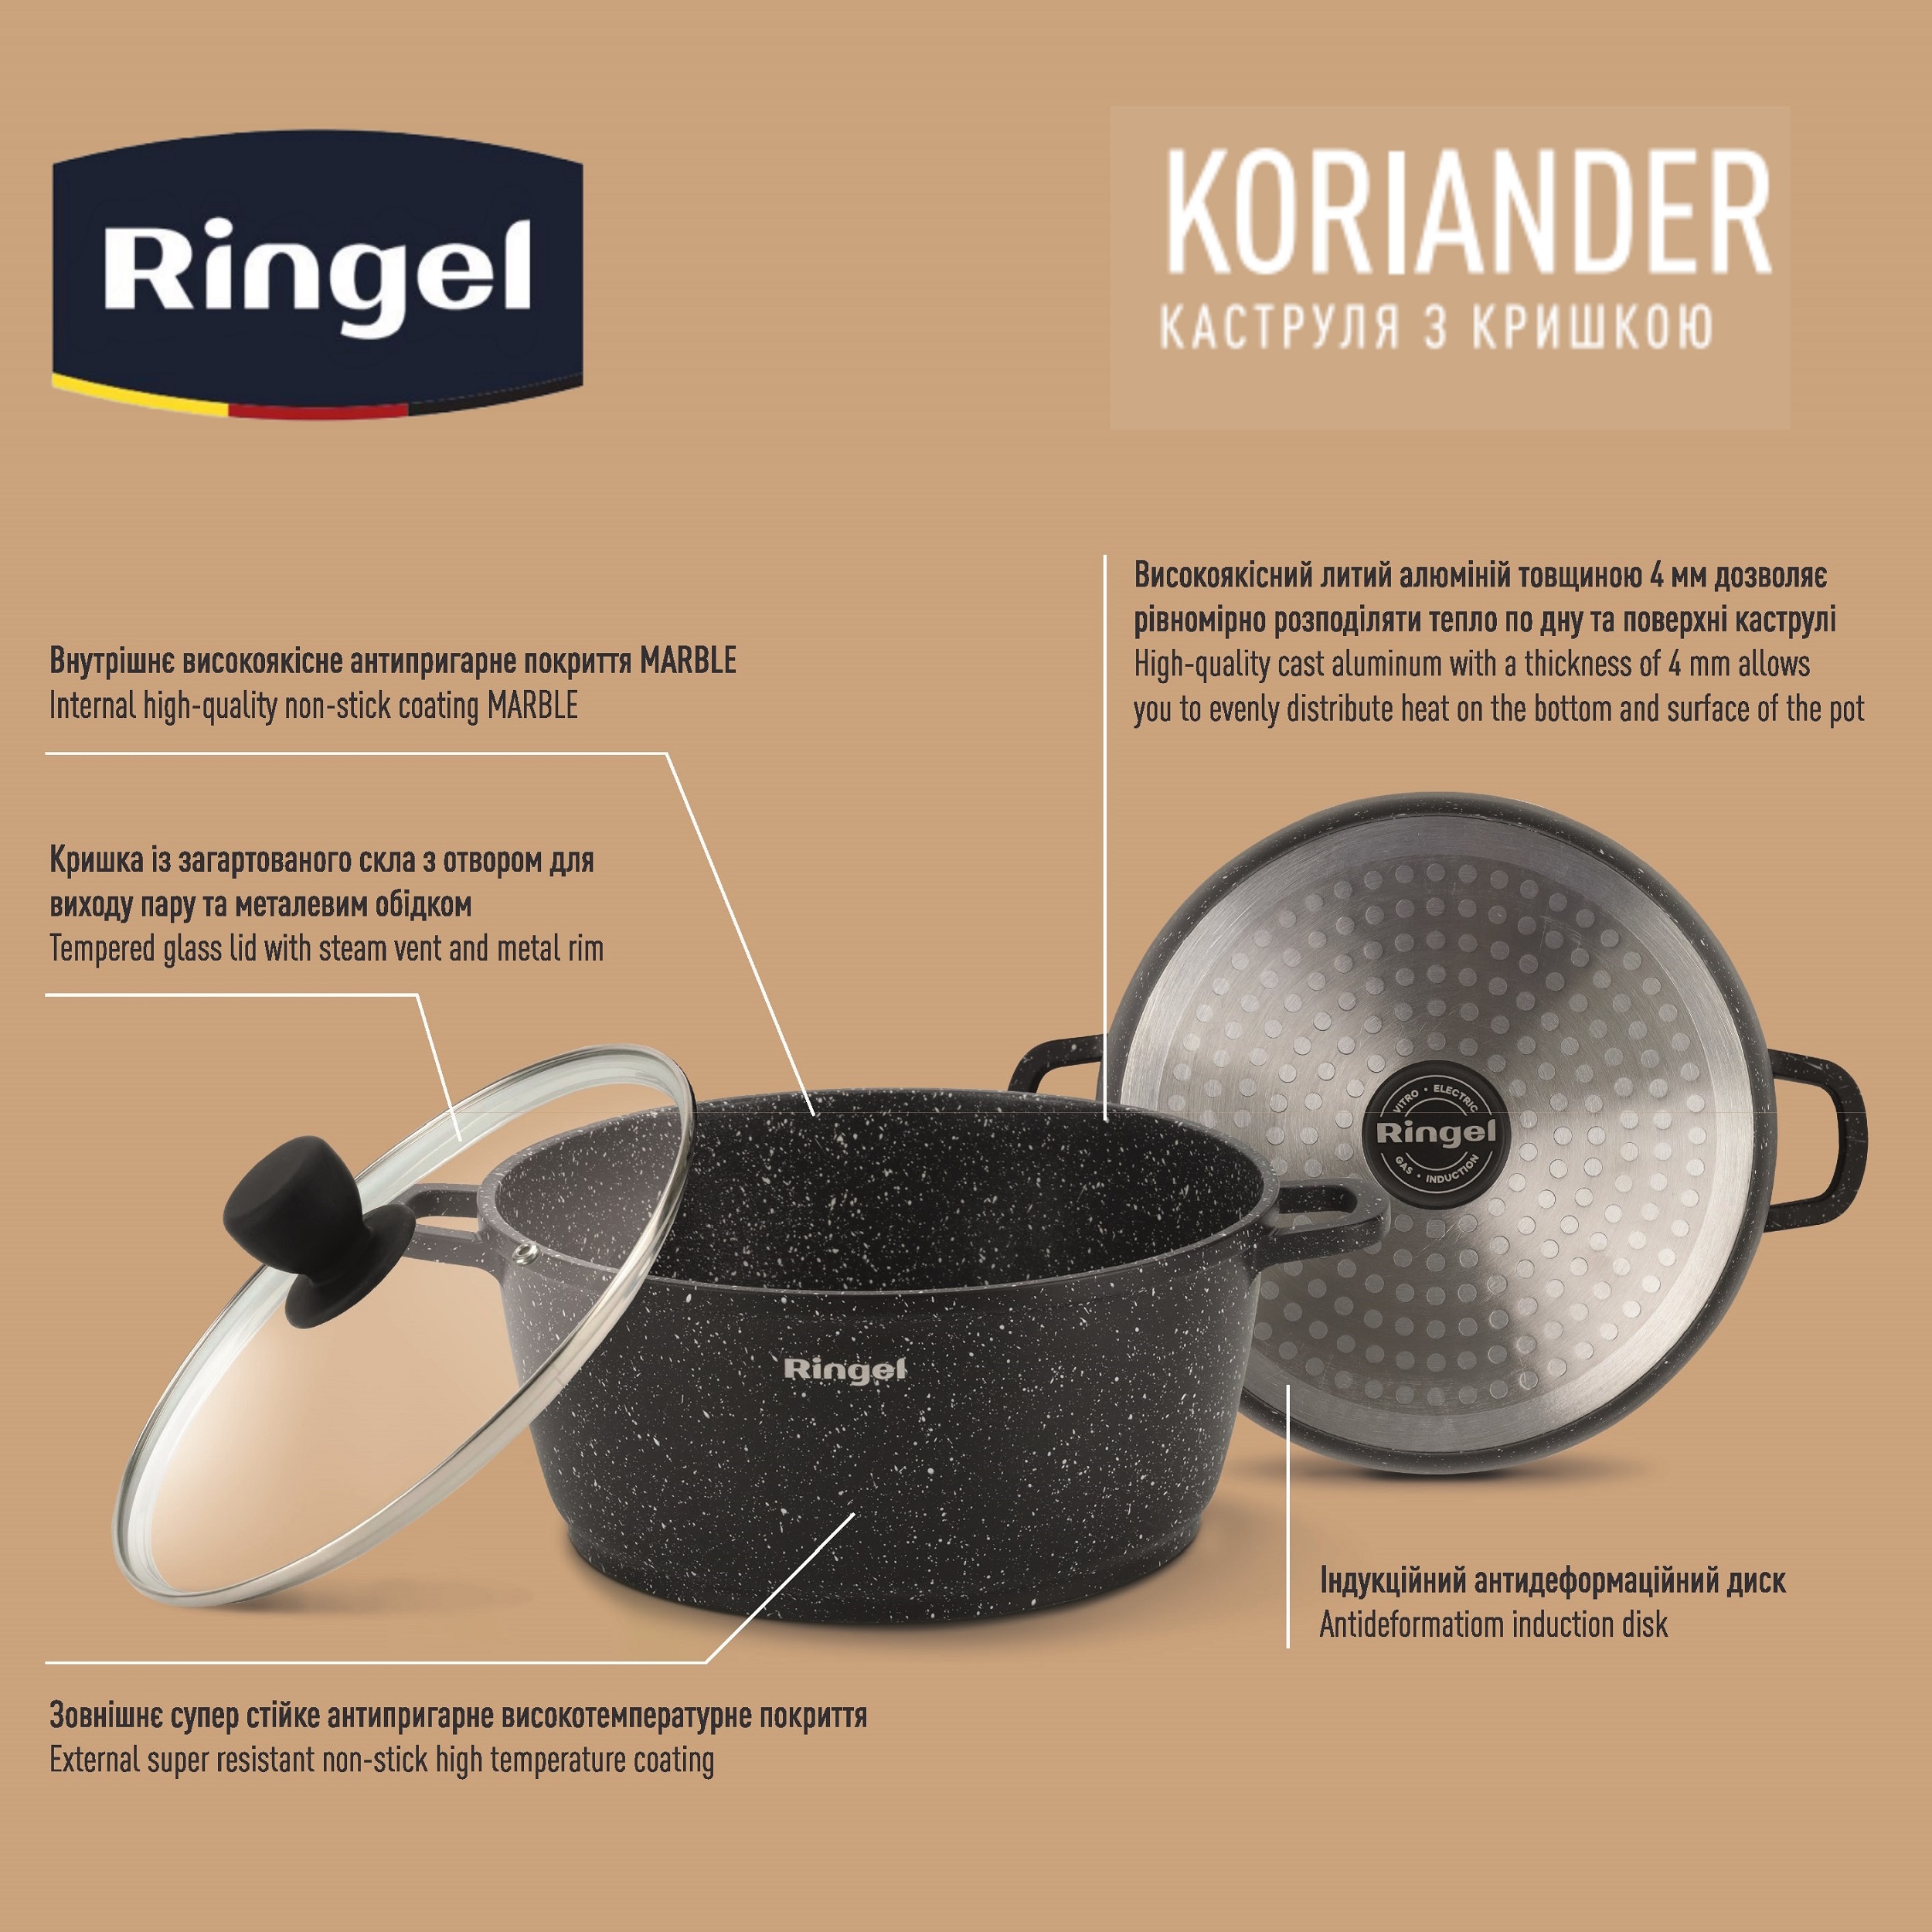 Каструля RINGEL RG-2107-24 Koriander 4.5 л, каталог